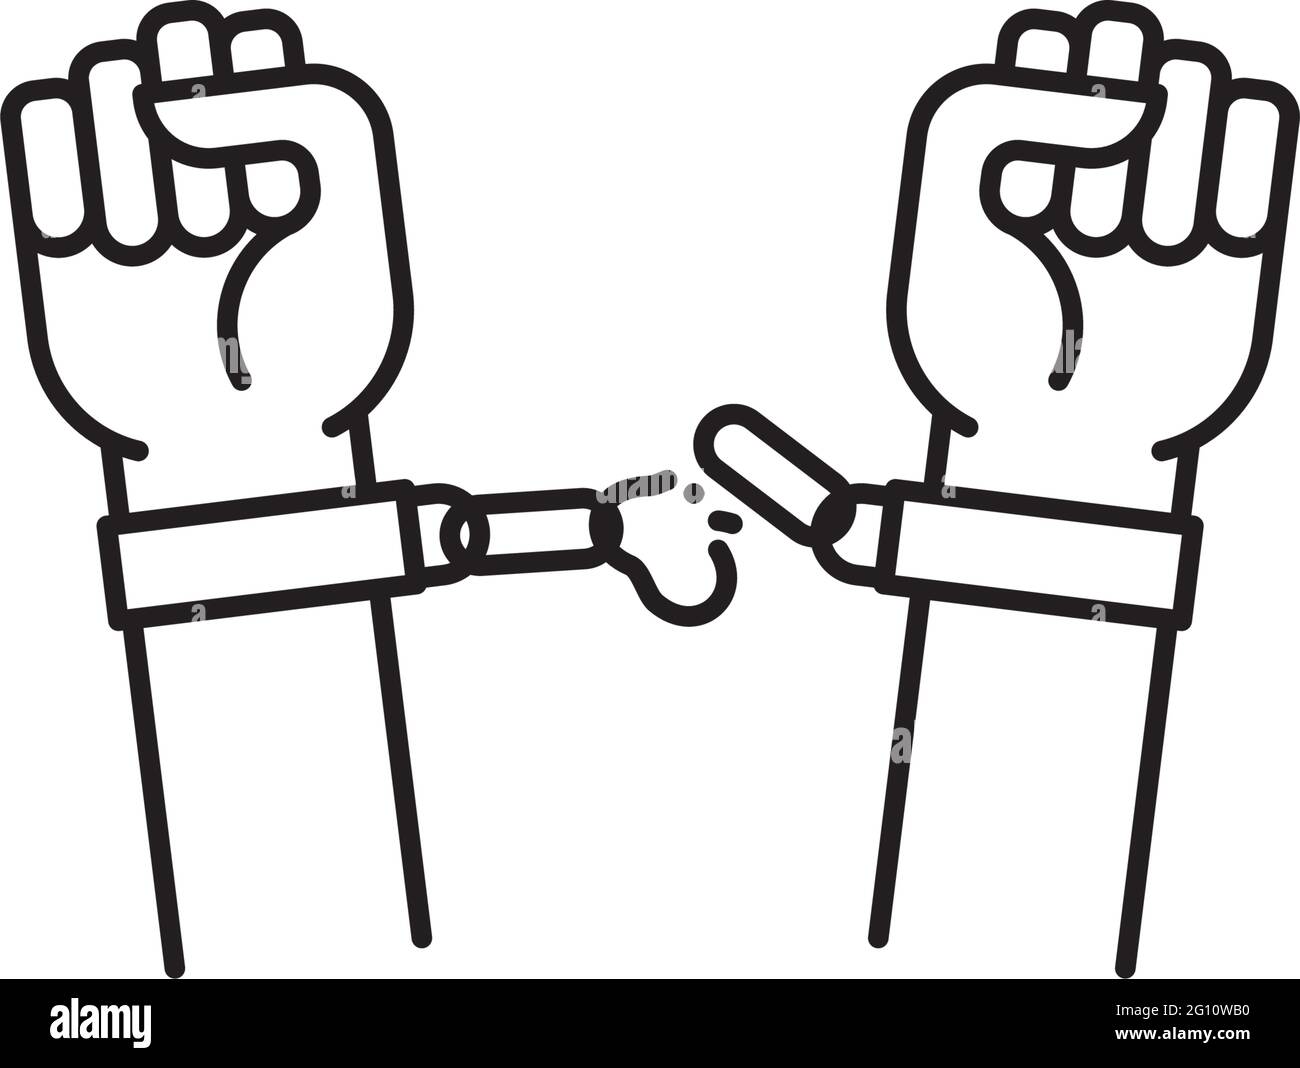 Manos liberándose de grilletes línea vectorial icono para el Día Internacional para la Abolición de la Esclavitud el 2 de diciembre Ilustración del Vector